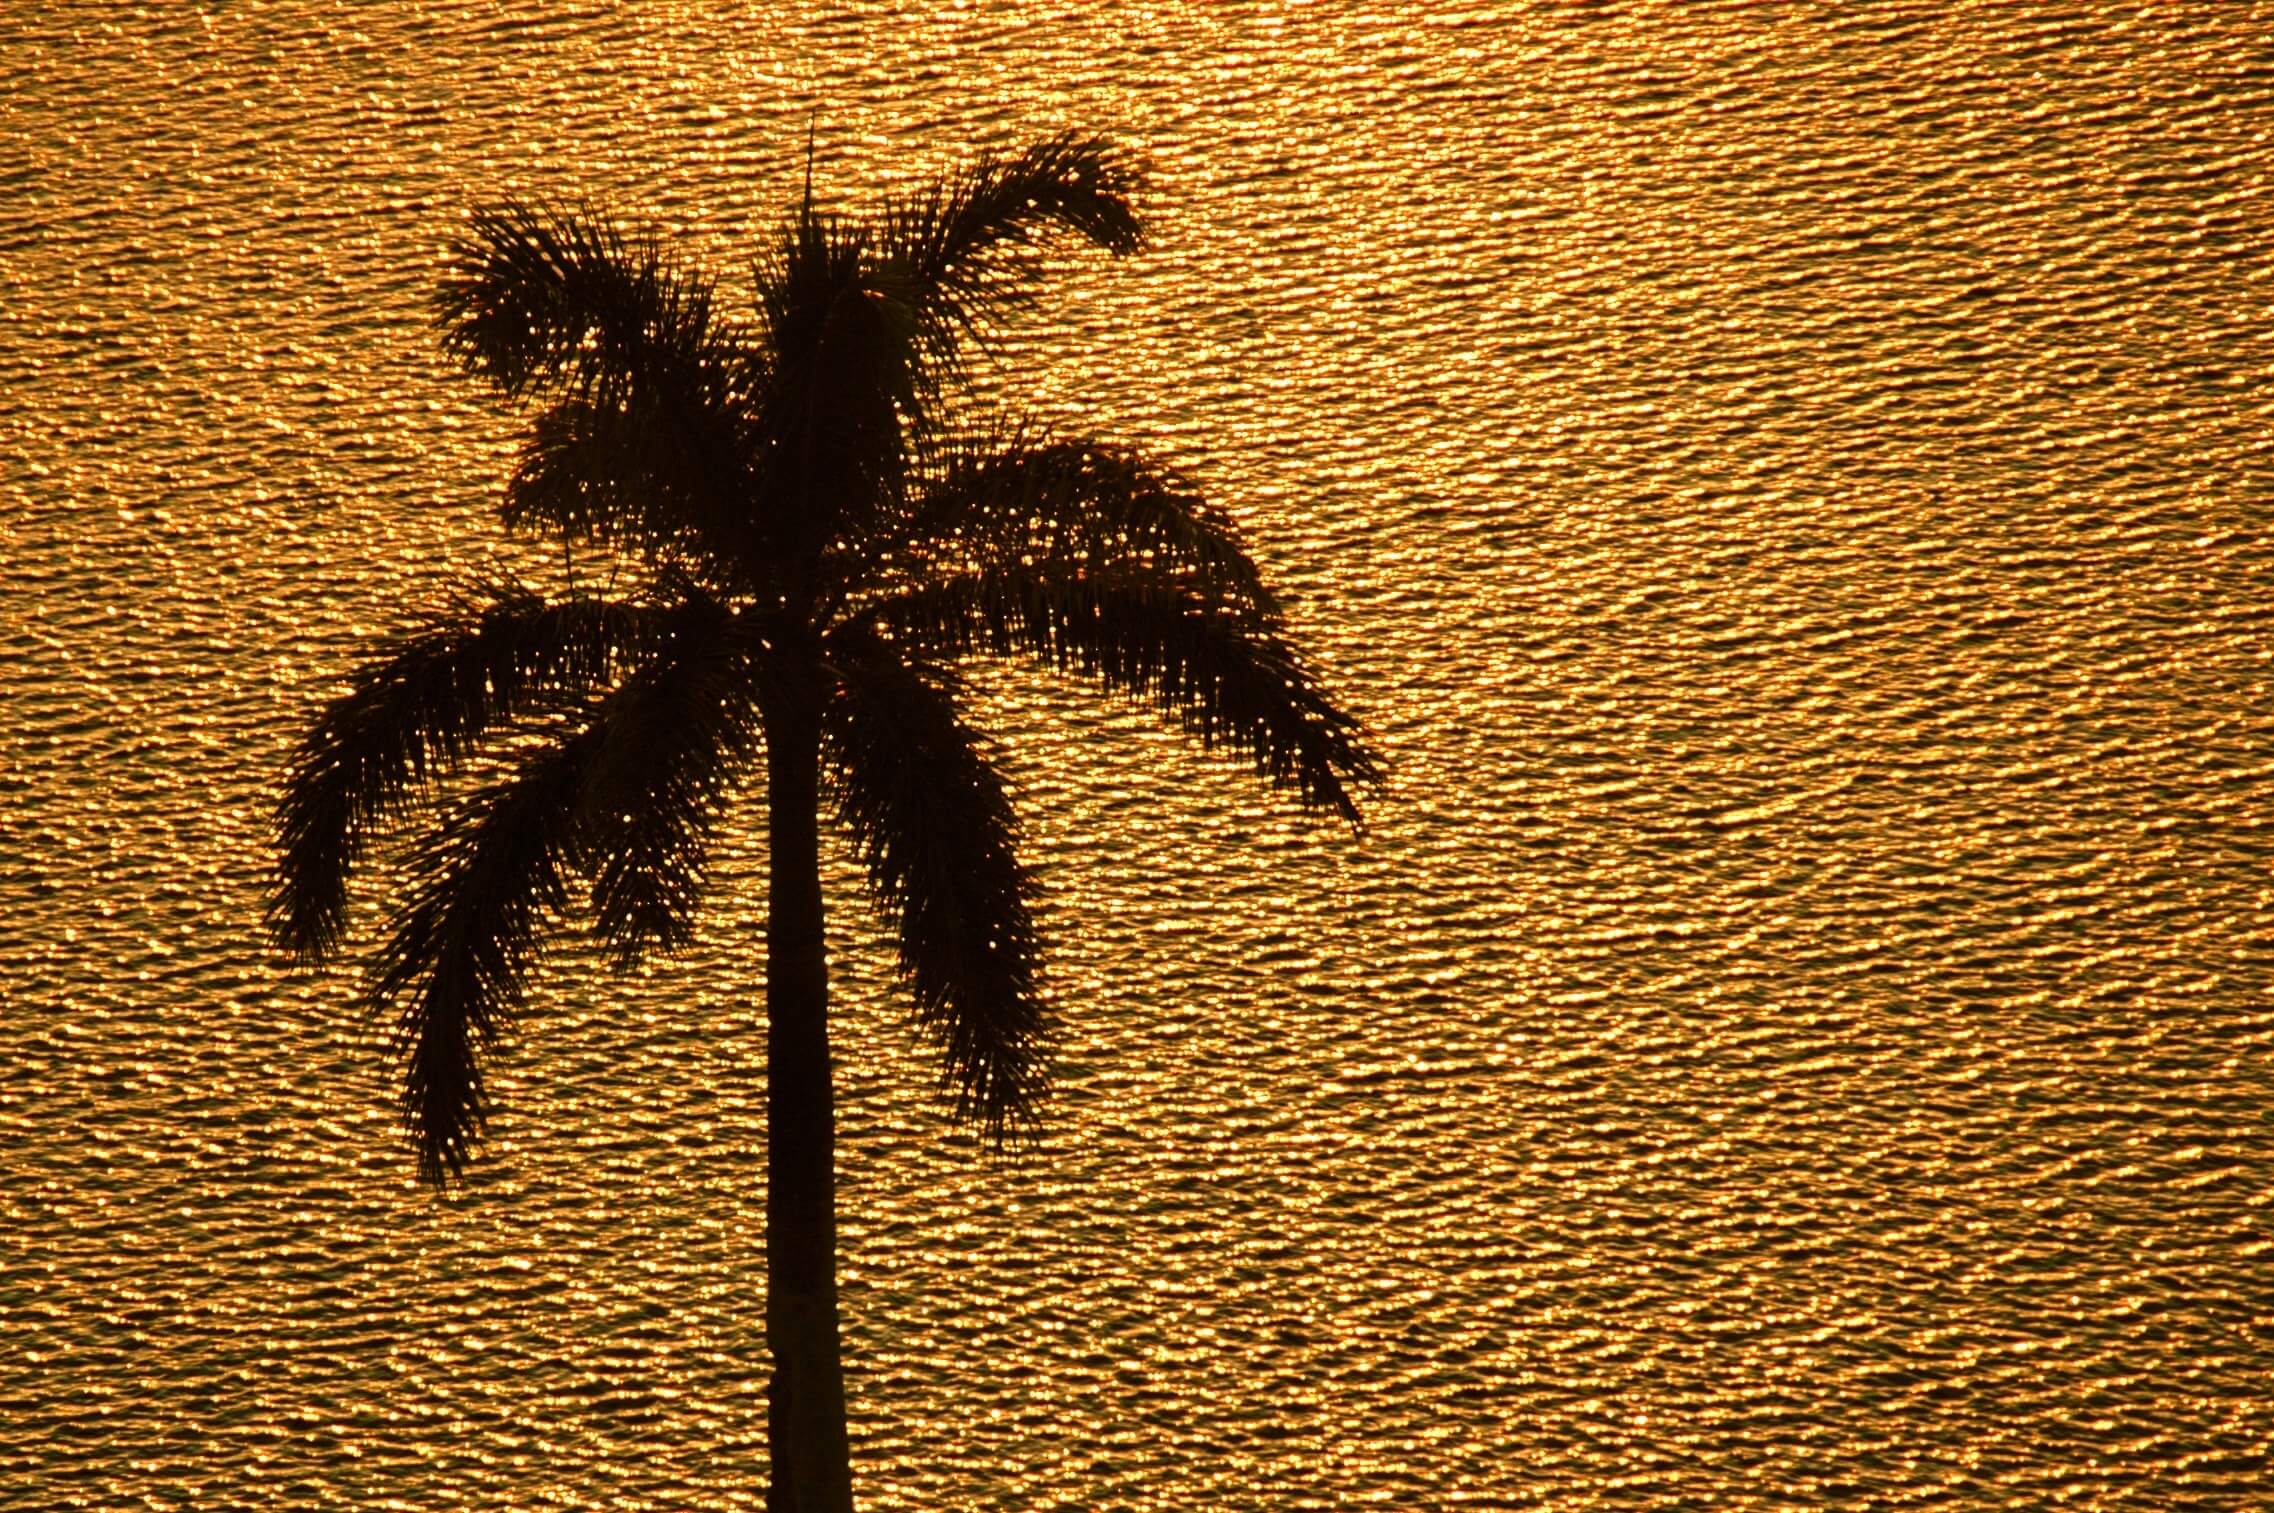 gold_palm_beach-761828-edited.jpg